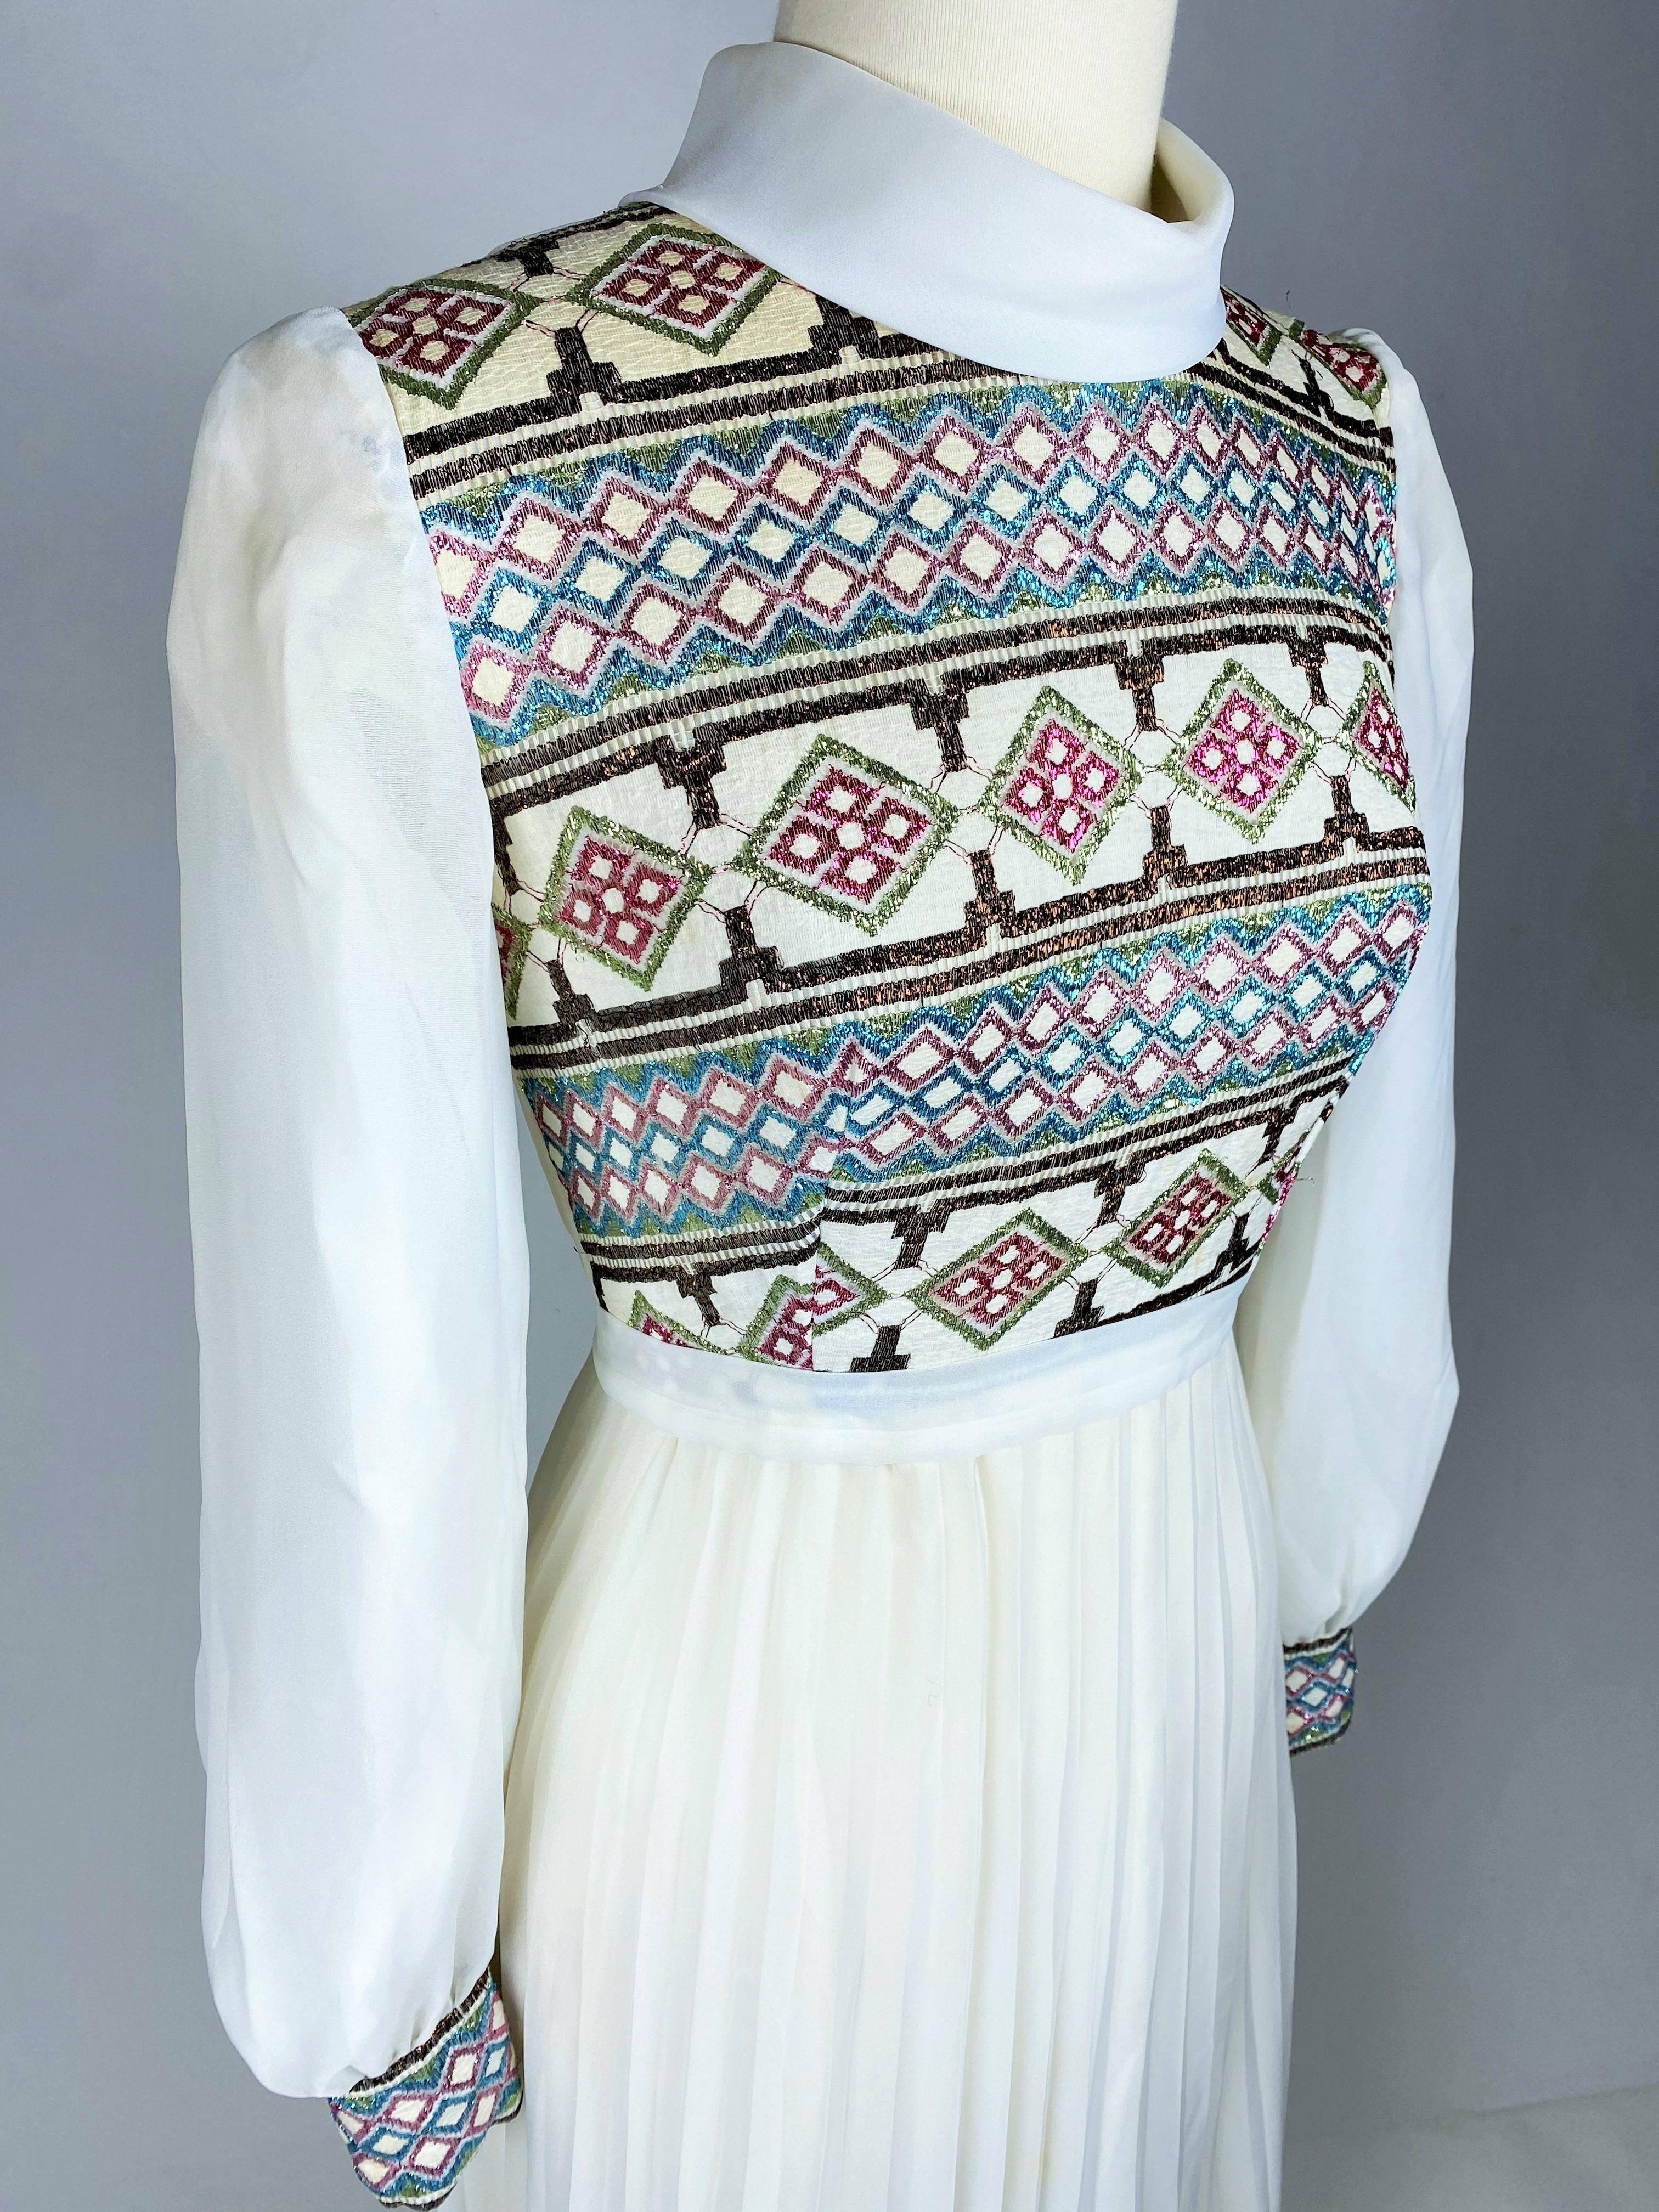 Ca. 1972

Frankreich

Langes Kleid aus cremefarbenem Nylon mit Bustier und Manschetten aus glänzendem Lurex in geometrischen Mustern für eine Feier oder eine Brautjungfer. Hoch tailliertes Kleid mit Claudine-Kragen und langen Puffärmeln. Breiter